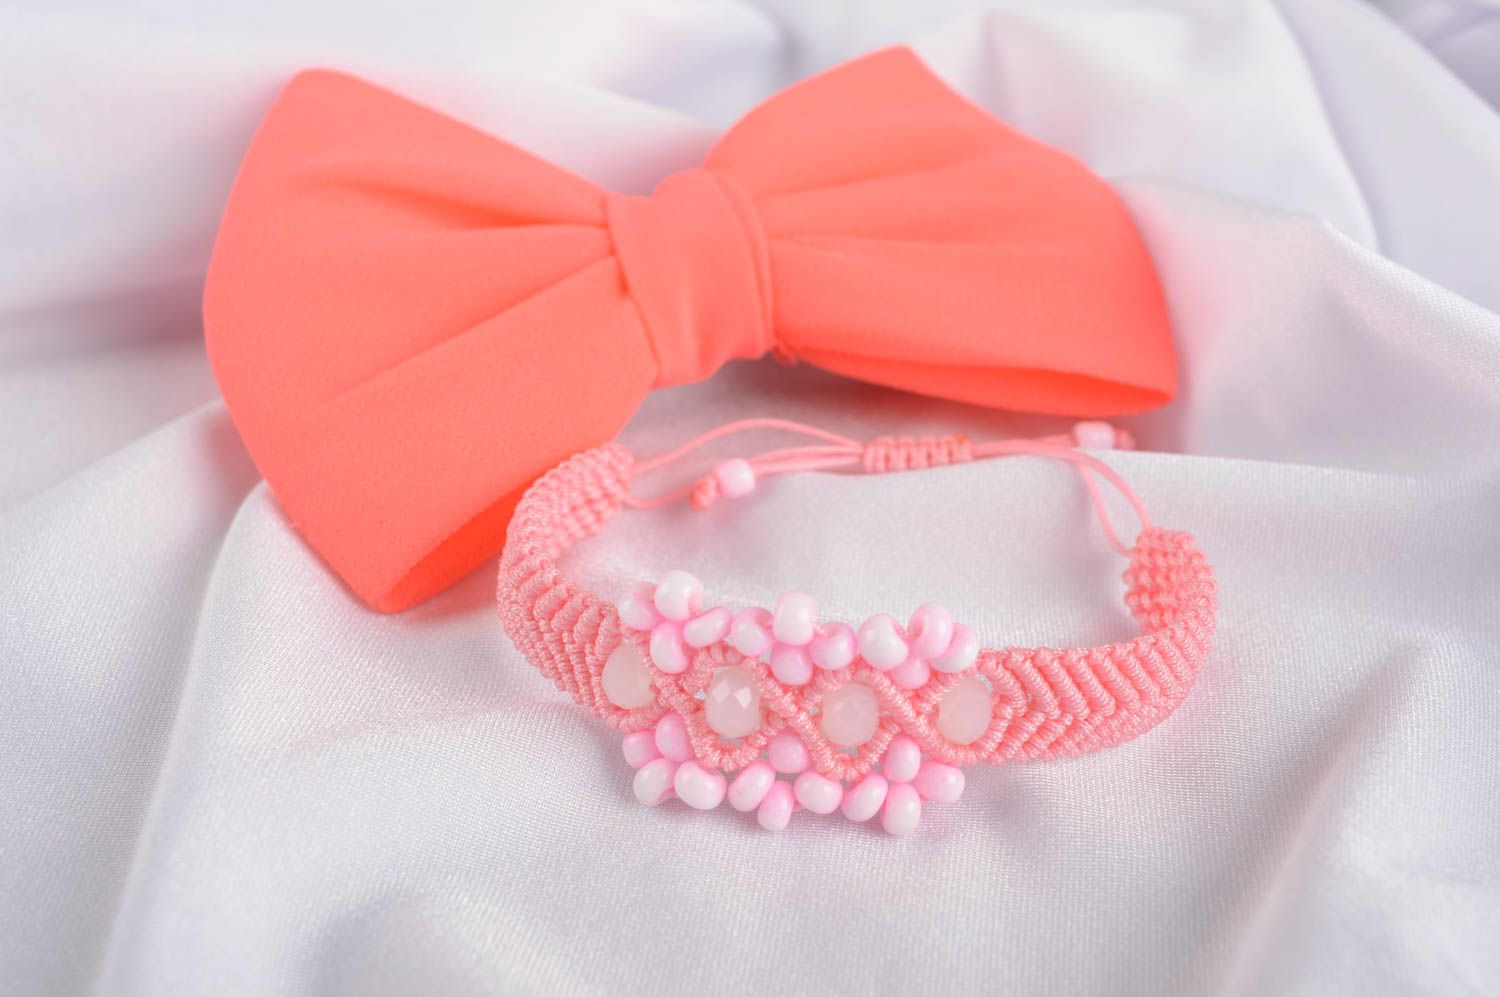 Handmade Textil Armband Armschmuck Damen Mode Schmuck schönes Armband rosa zart foto 1